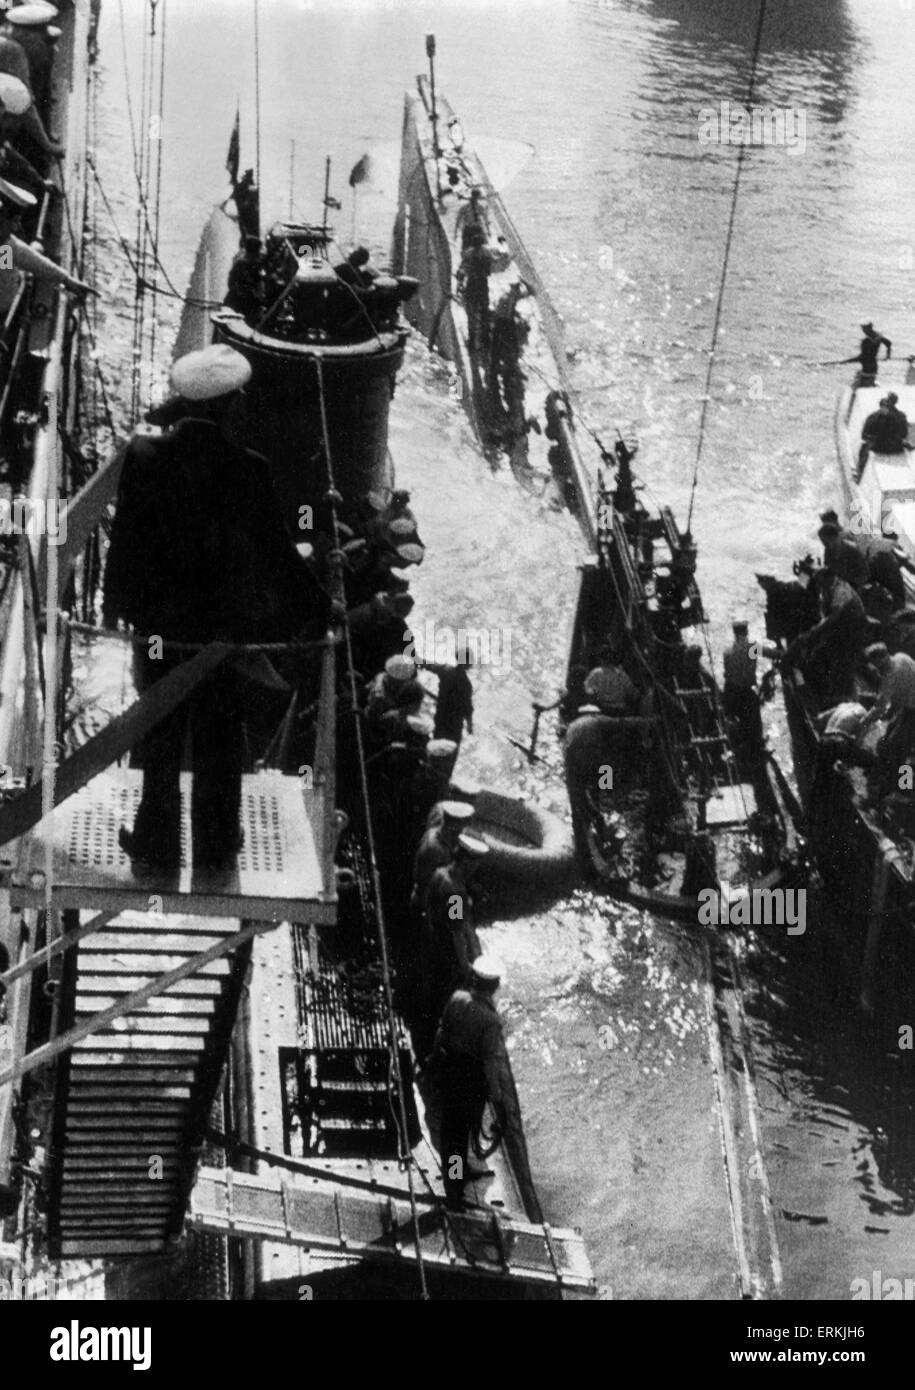 Hundimiento del submarino HMS Sidon en Portland, en Dorset. Imagen tomada desde la 'Maidstone' mostrando los buceadores de lanzamientos, boya marcador y burbujas del mar donde los buzos están trabajando en el Sunken sub. Una explosión provocada por un torpedo defectuoso se hundió con la pérdida de 13 vidas. El 16 de junio de 1955. Foto de stock